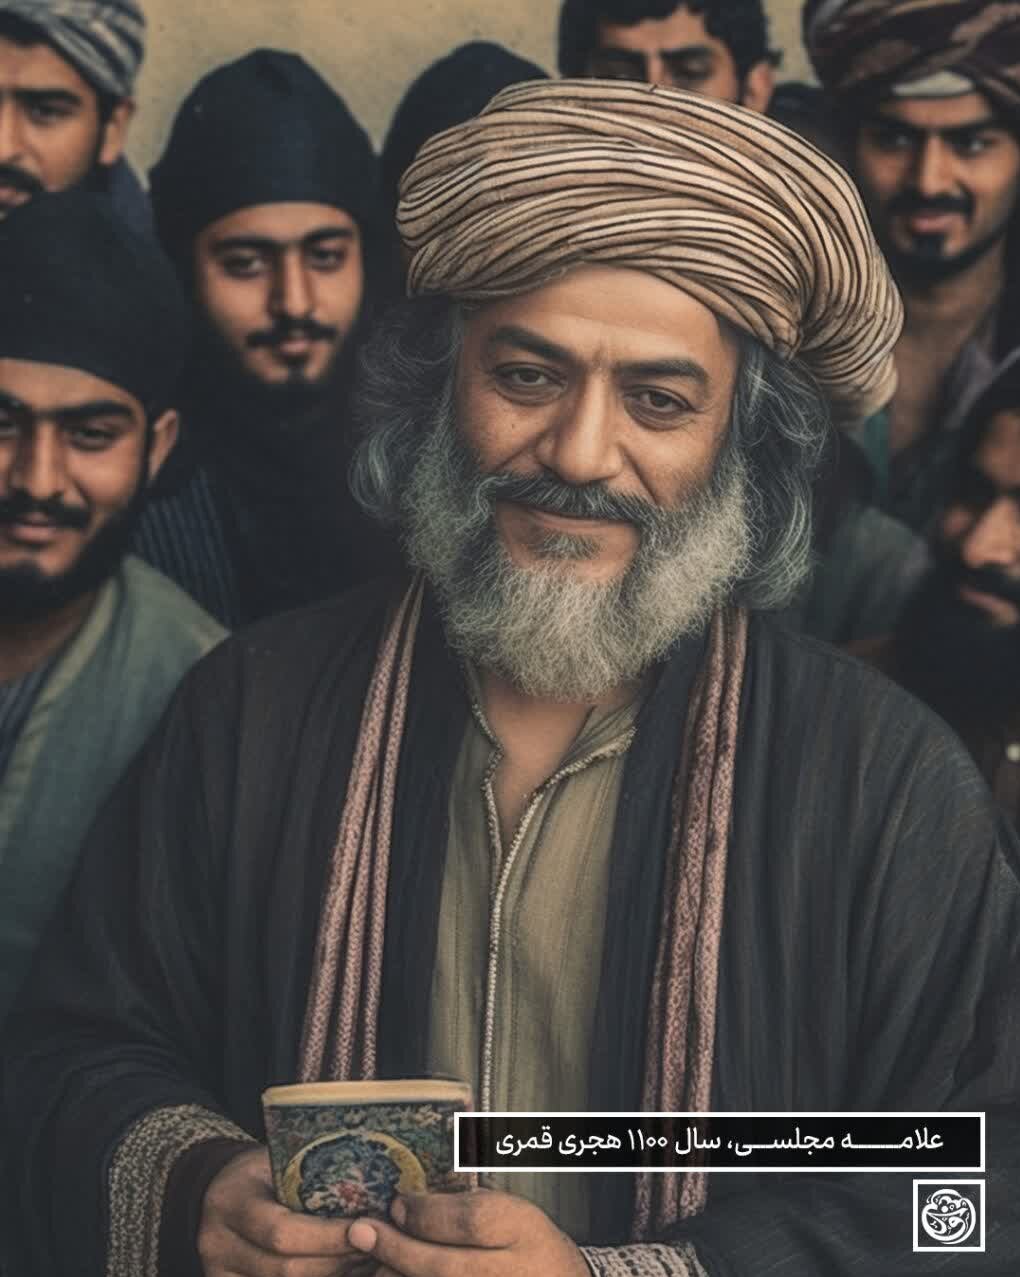 بازسازی چهره مشاهیر ایرانی توسط هوش مصنوعی + عکس